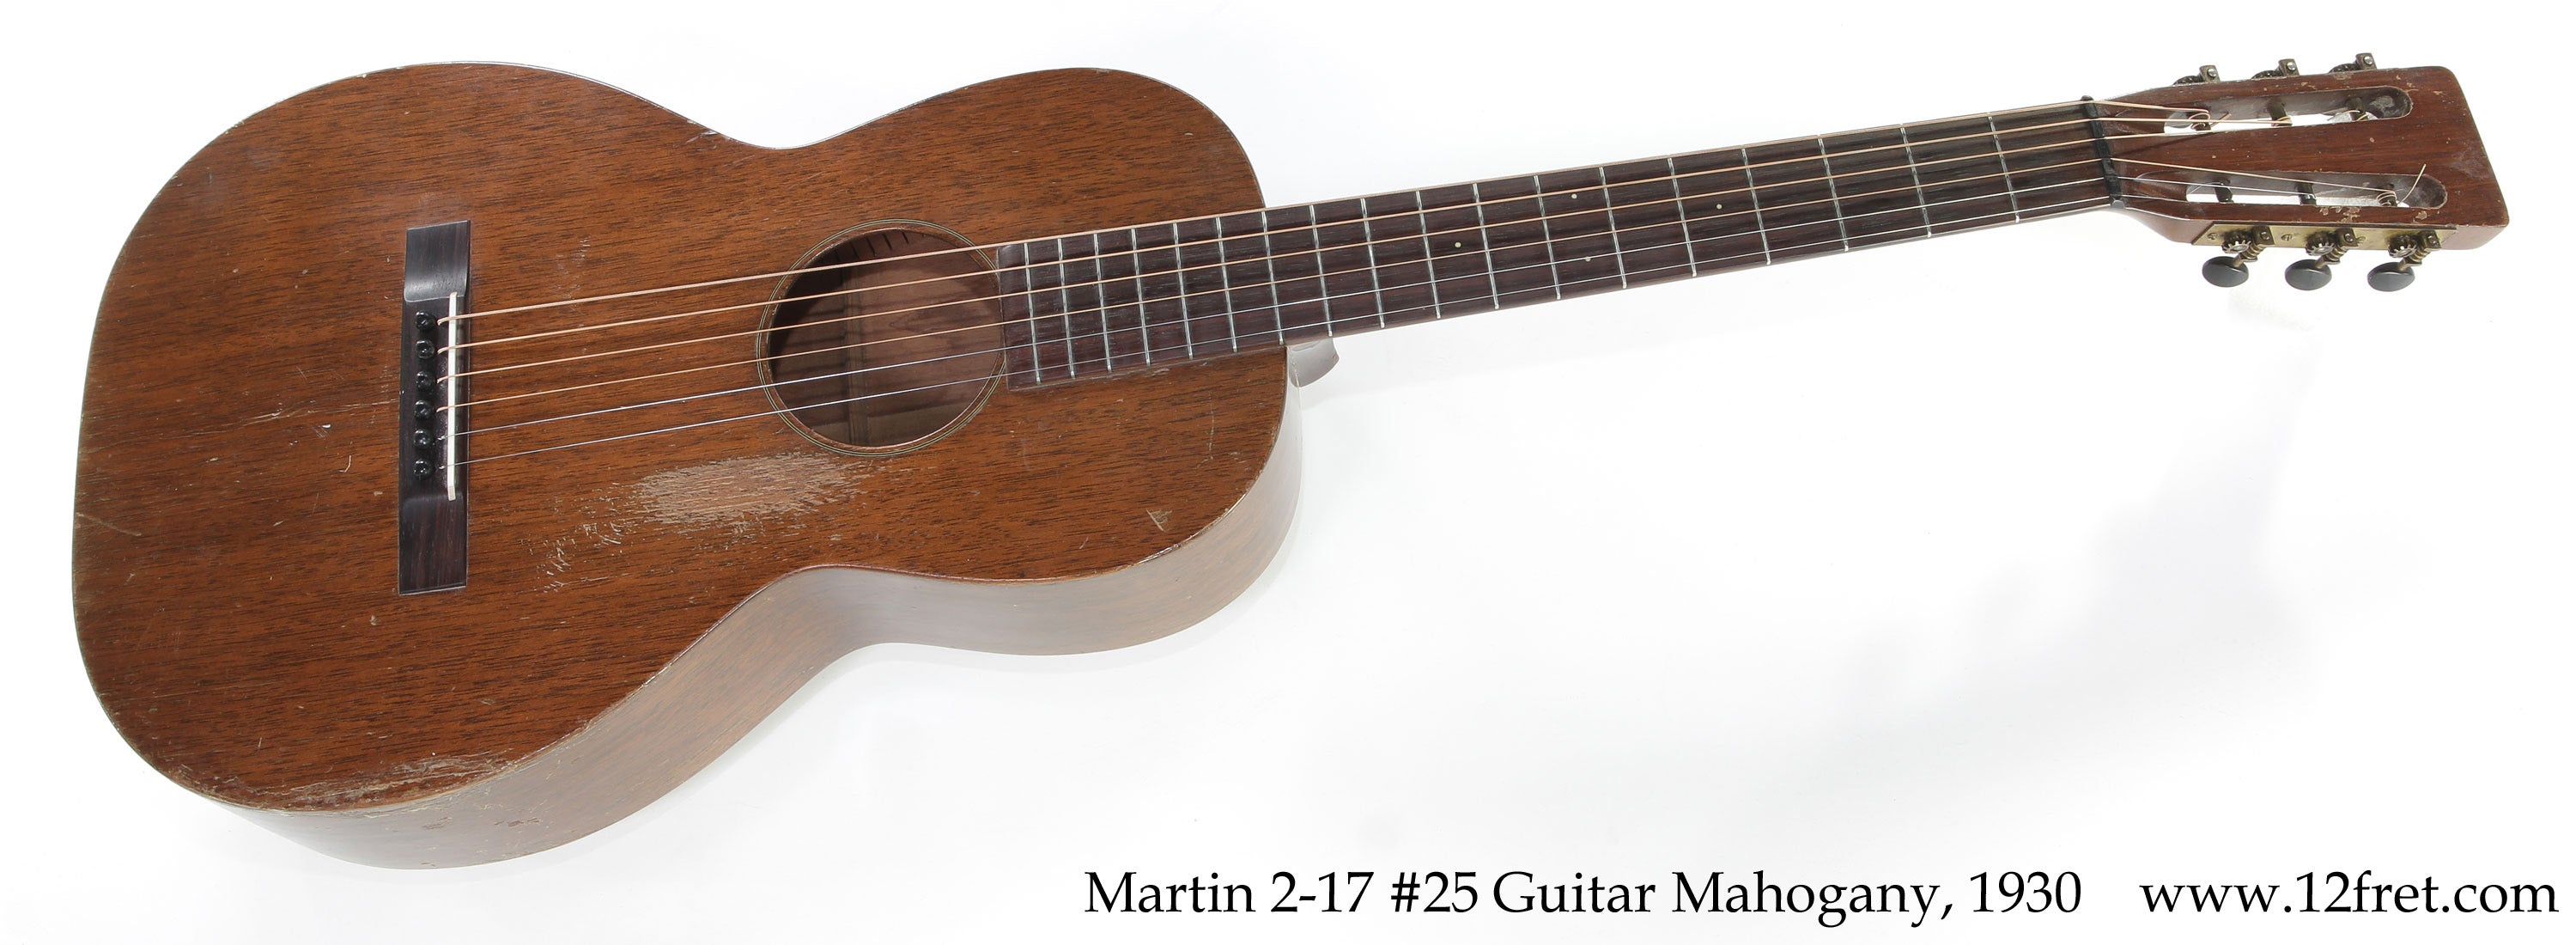 Martin 2-17 #25 Guitar Mahogany, 1930  - The Twelfth Fret